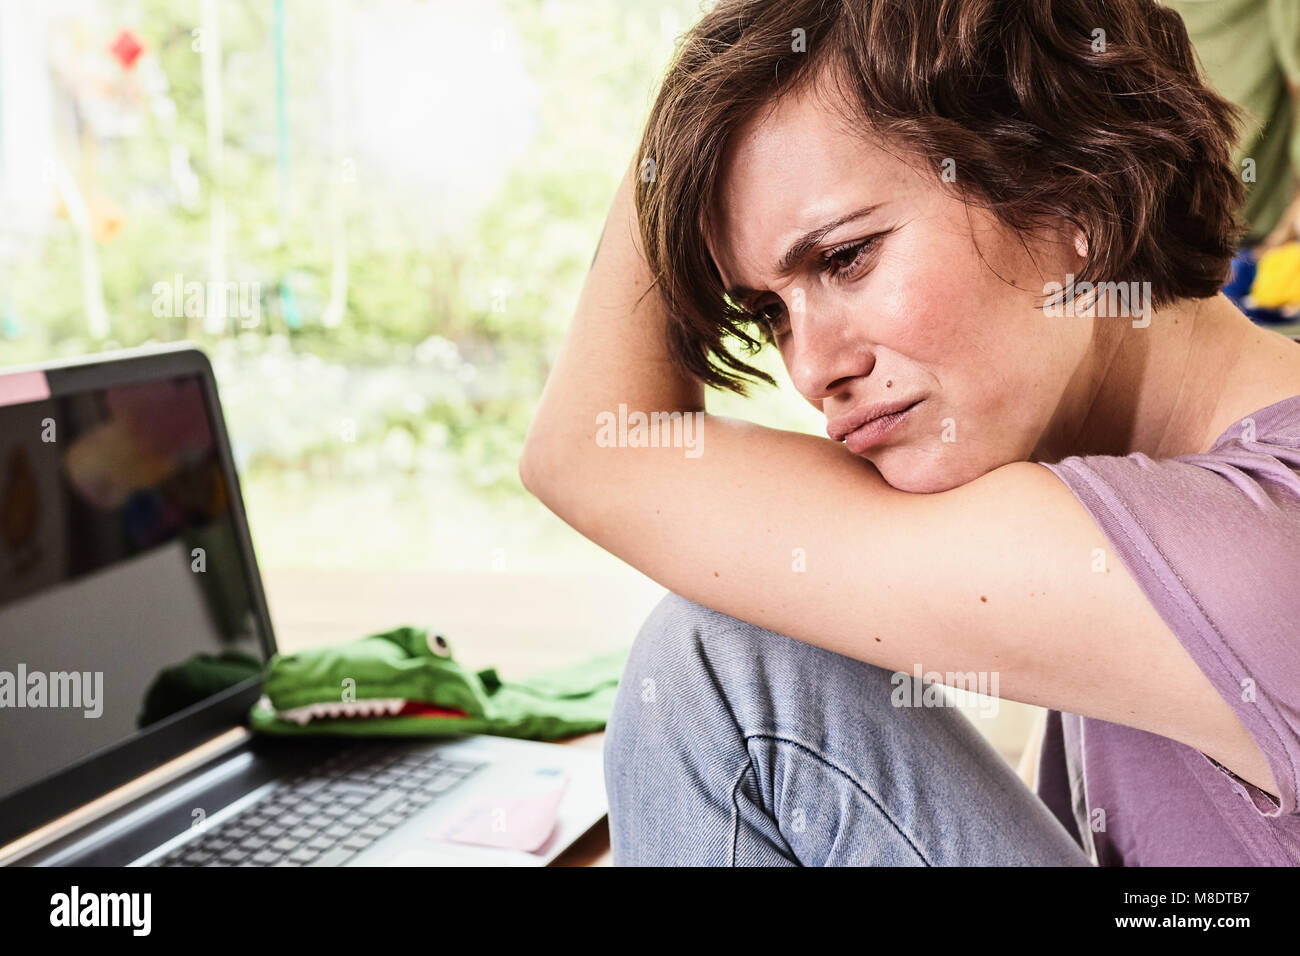 Mid adult woman at home, à l'aide d'un ordinateur portable, l'expression inquiète Banque D'Images